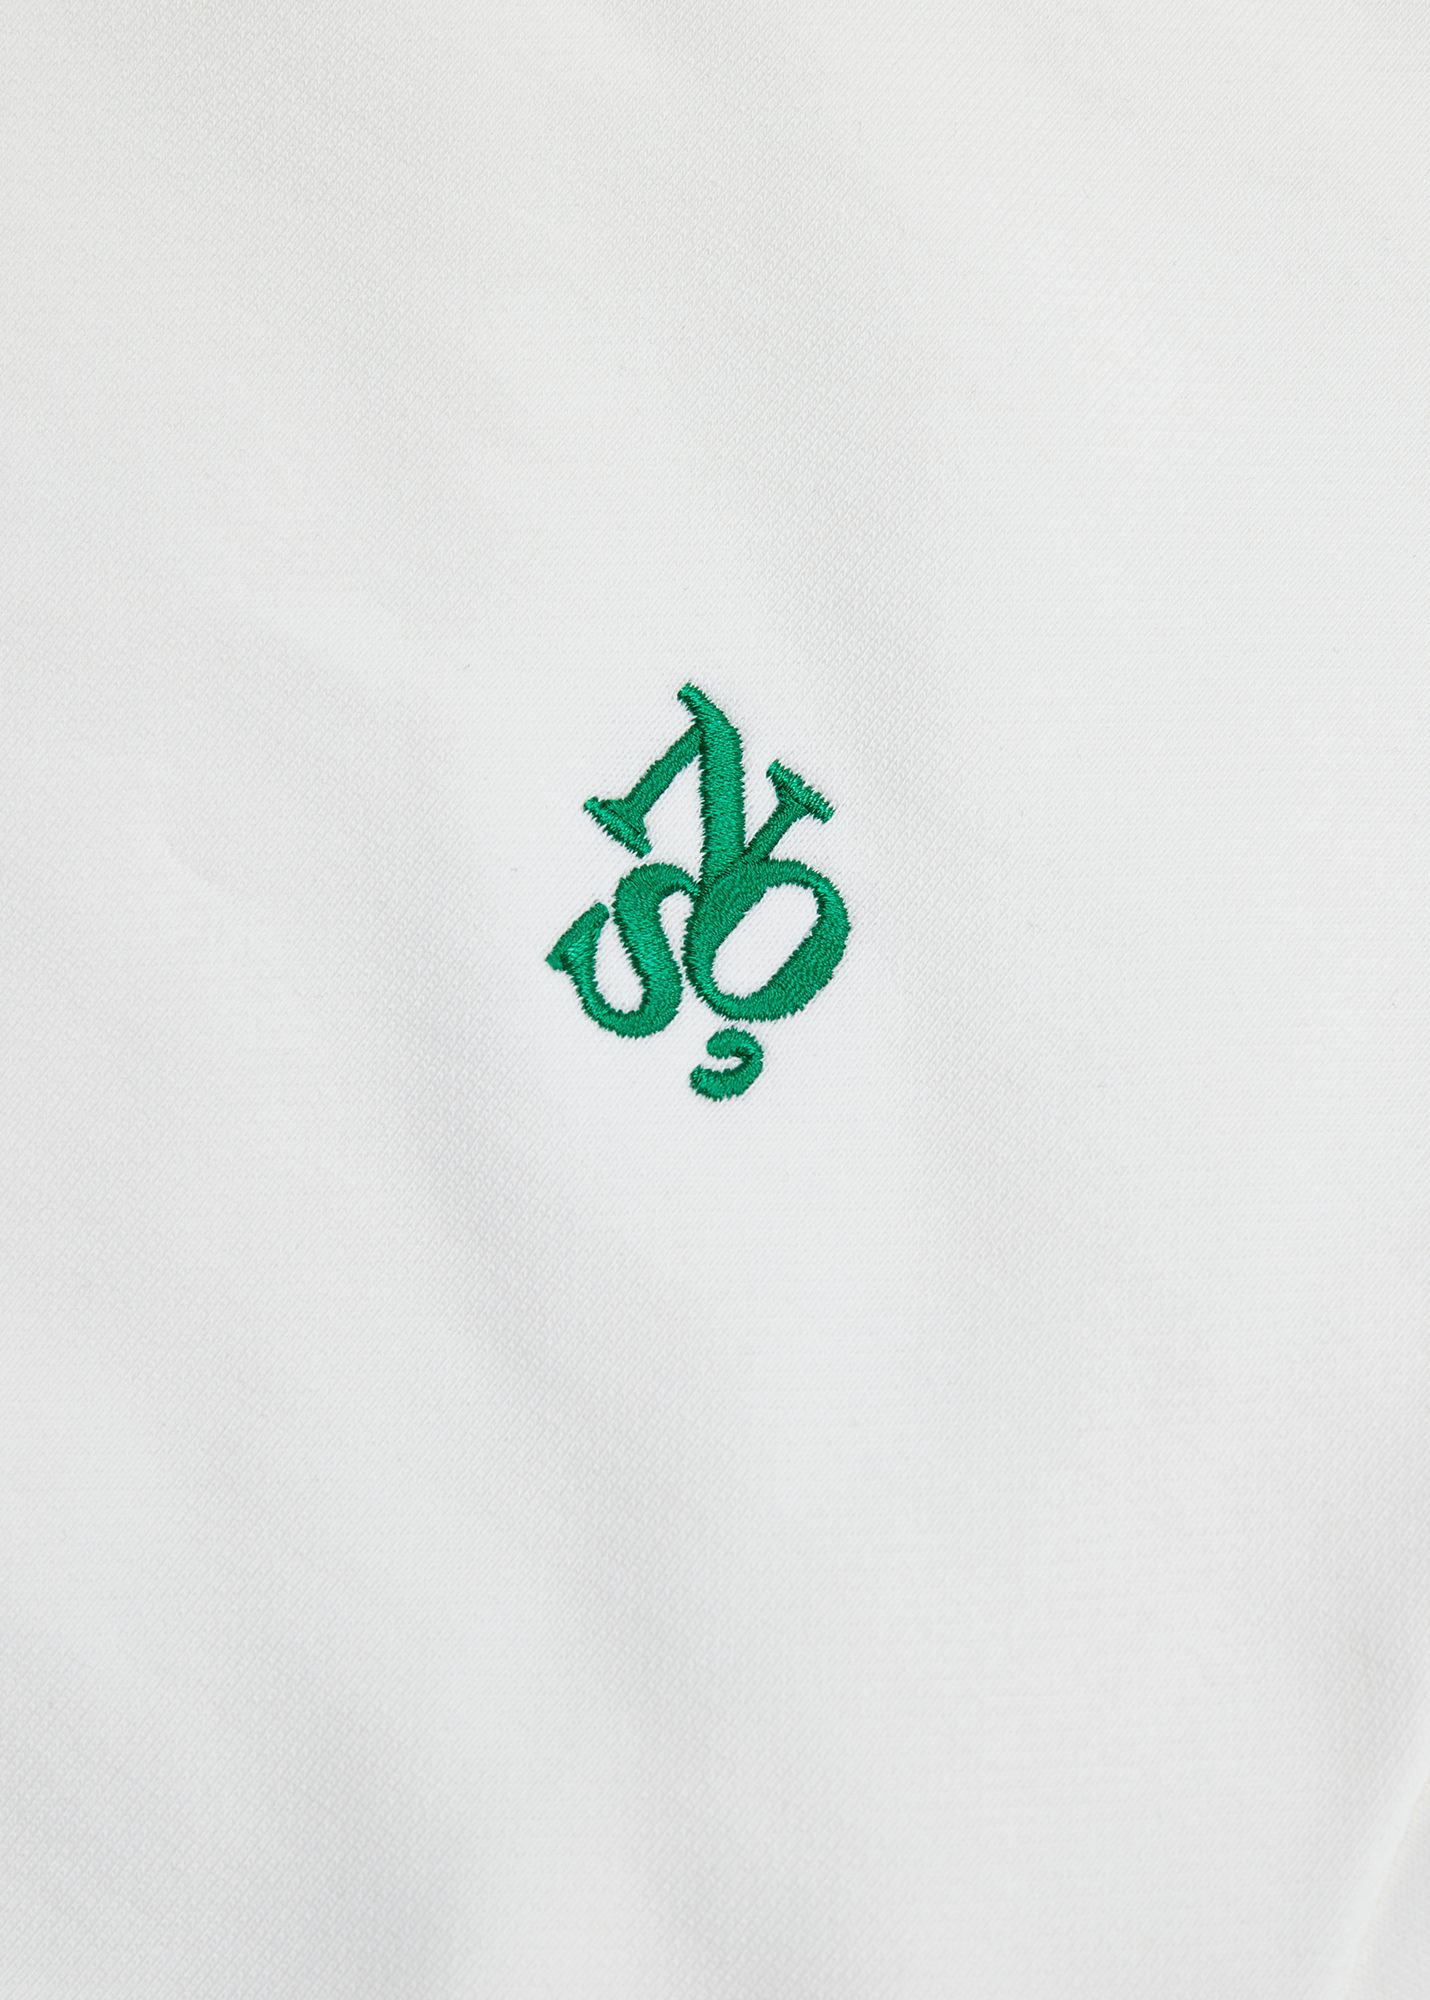 KIDS Signature symbol sweatshirt - White